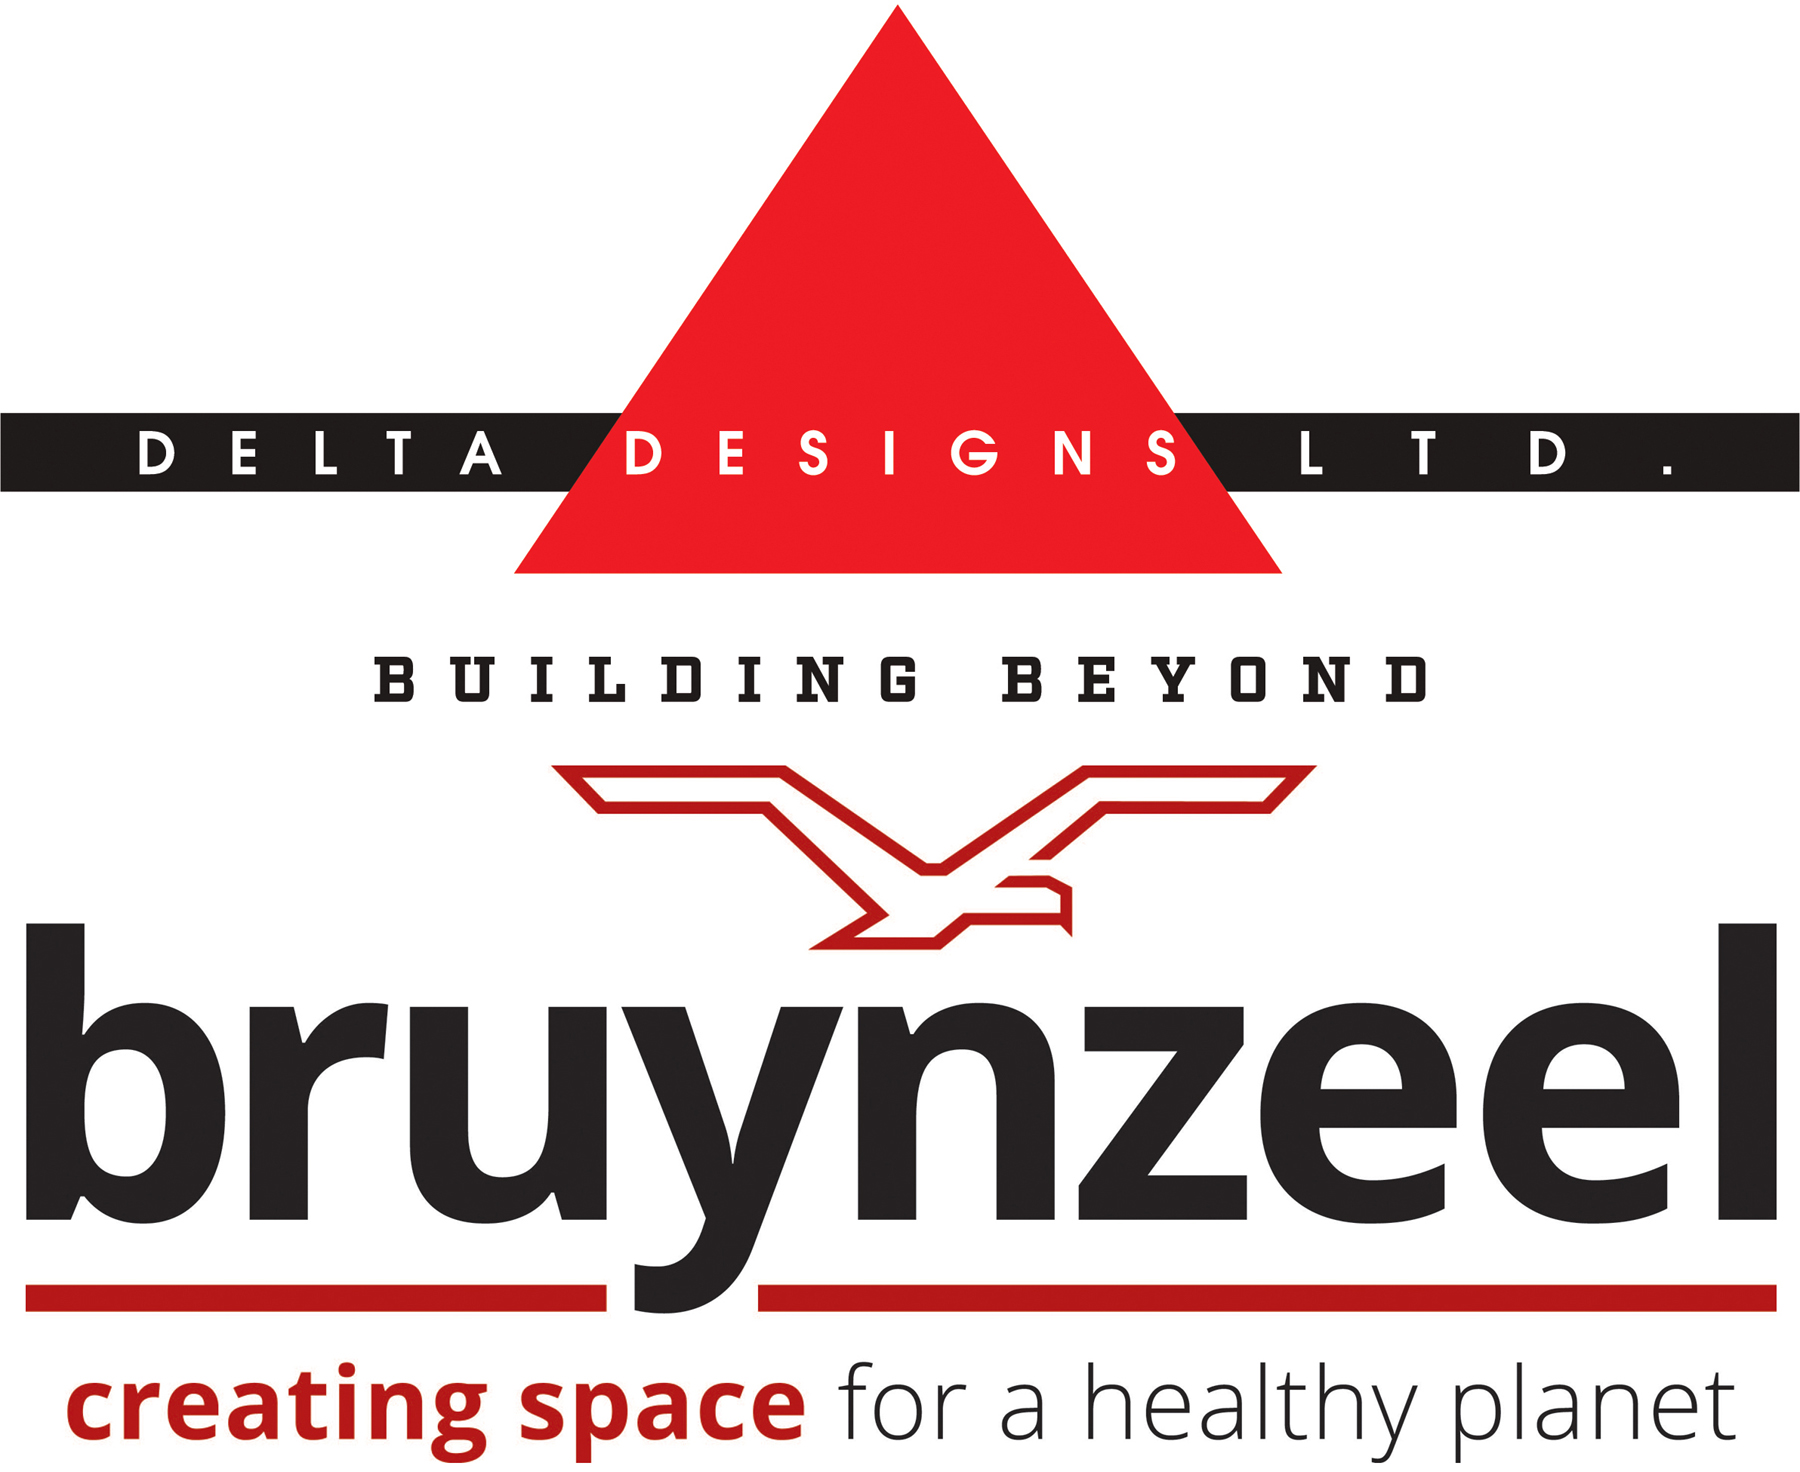 Delta Designs + Bruynzeel